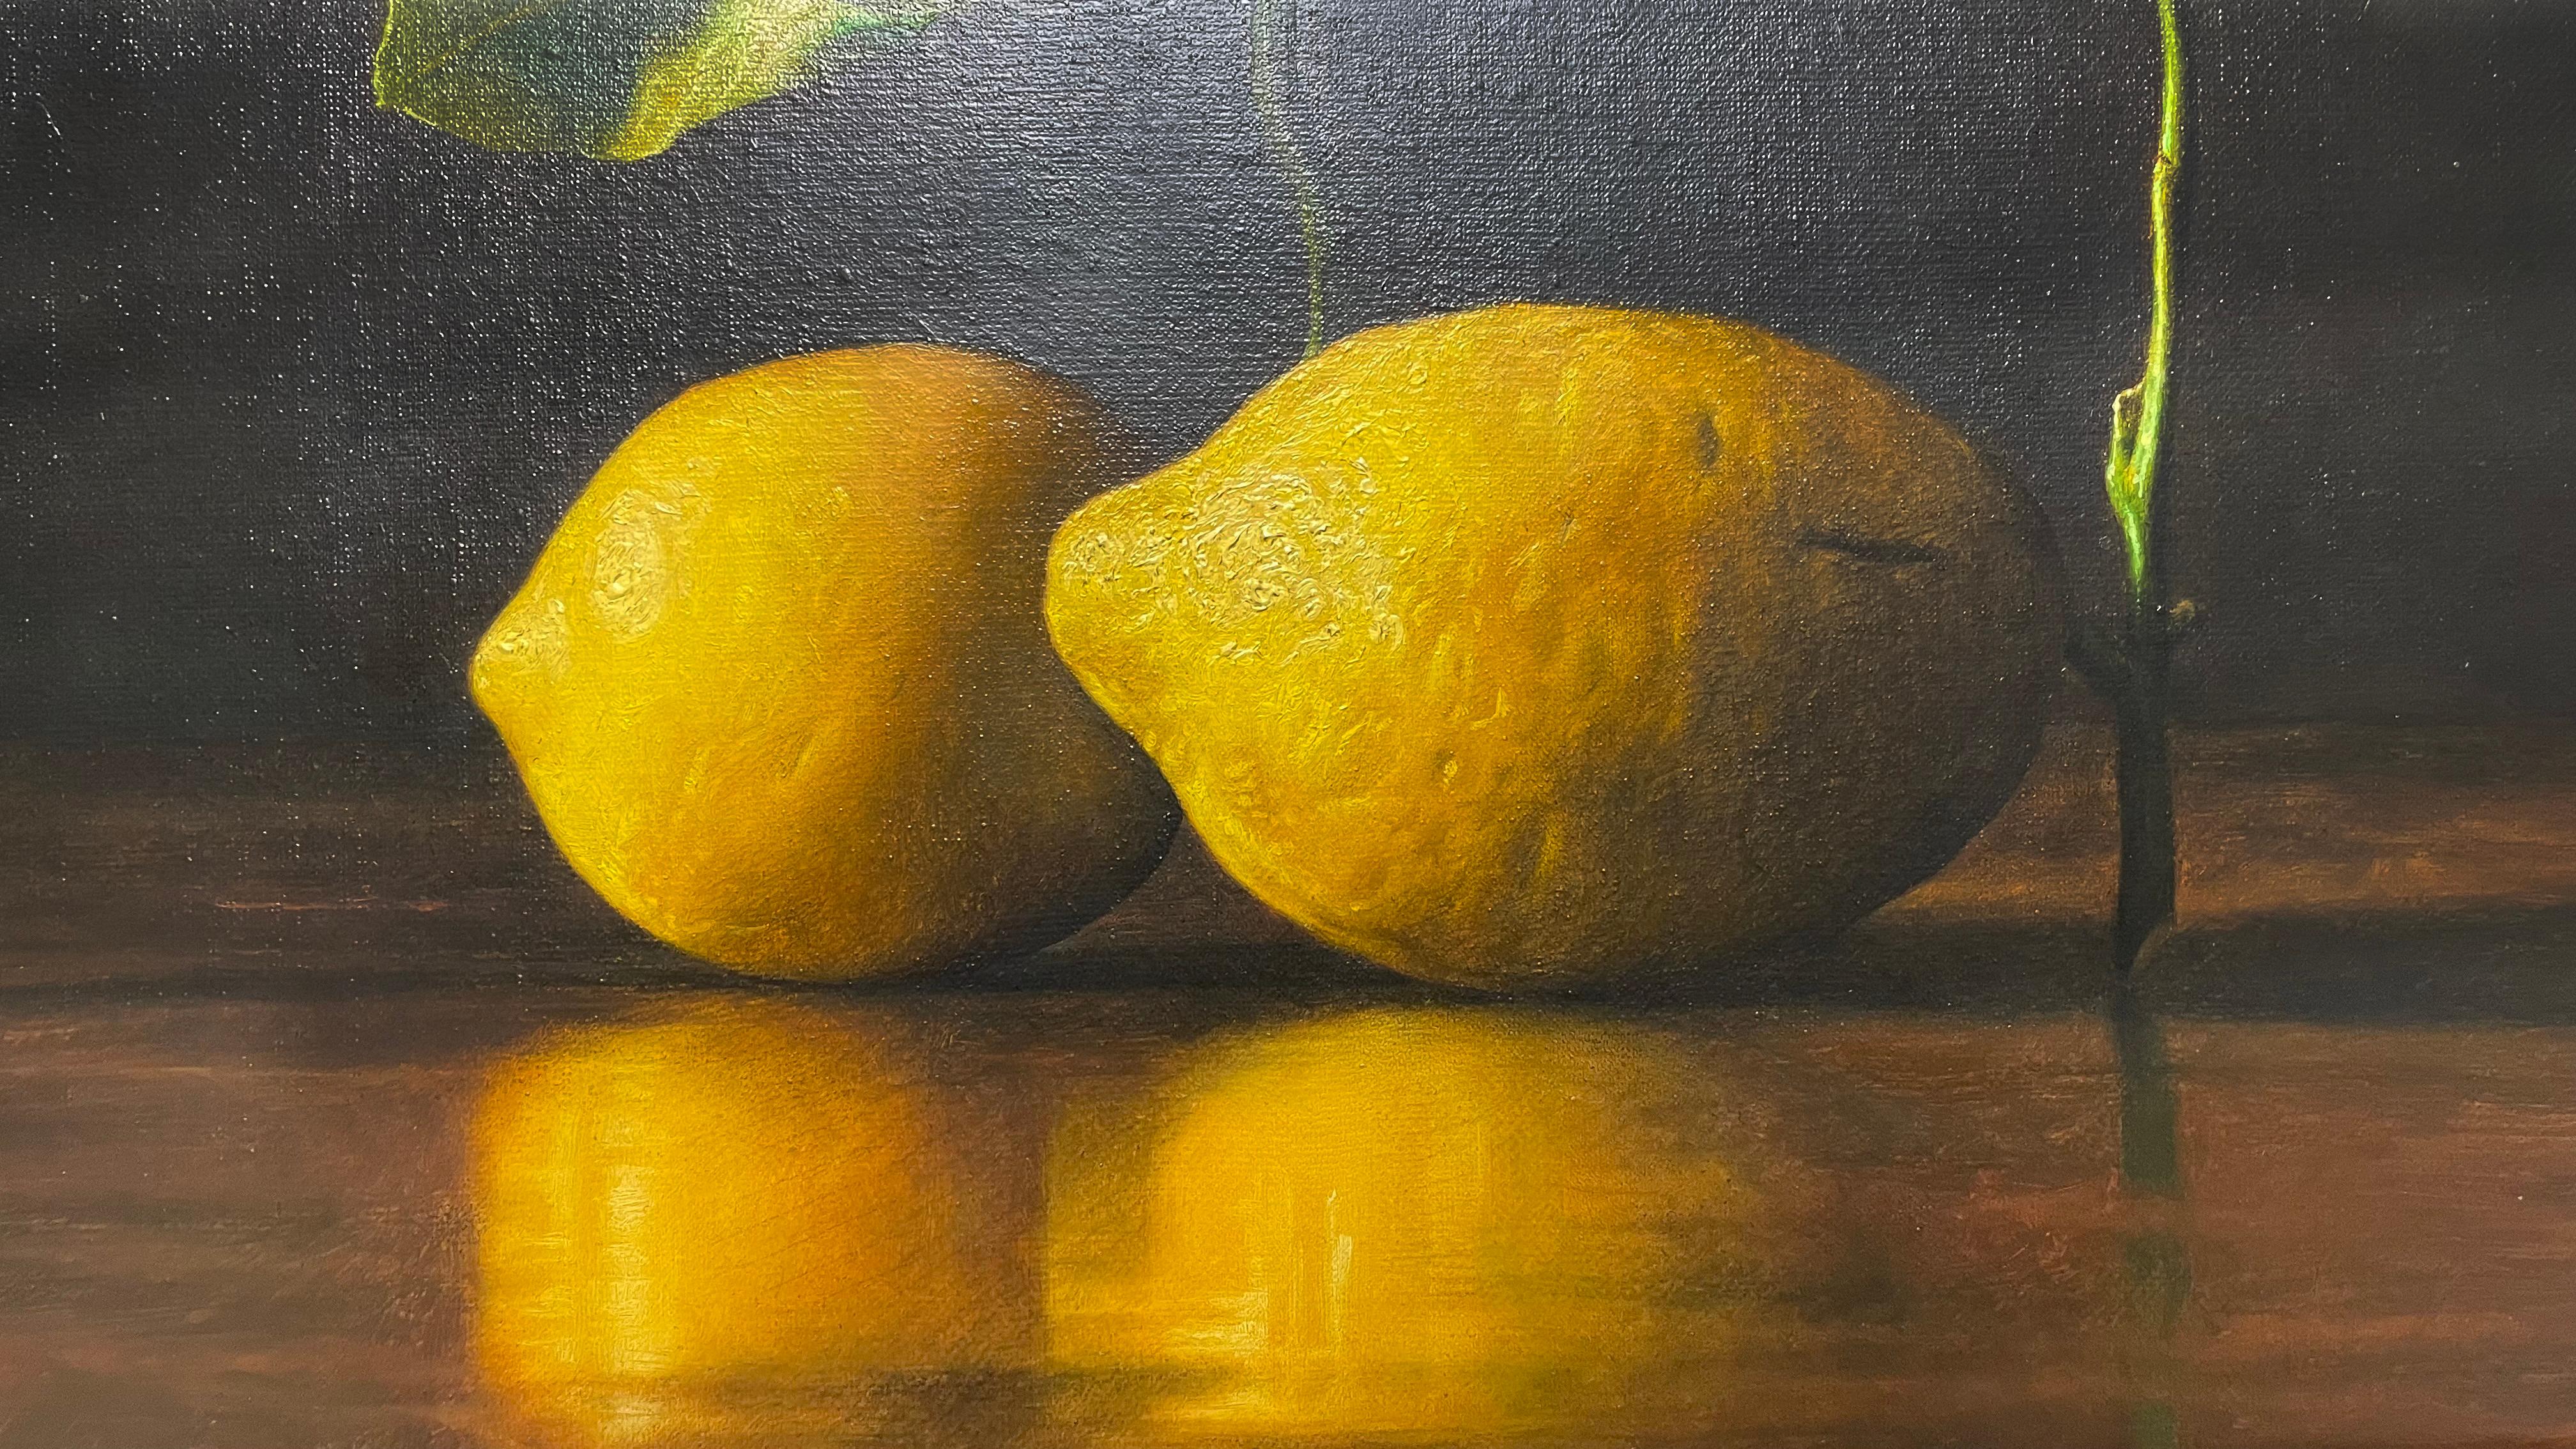 Nature morte classique et contemporaine aux citrons par un artiste italien  - Réalisme Painting par Gianluca Corona